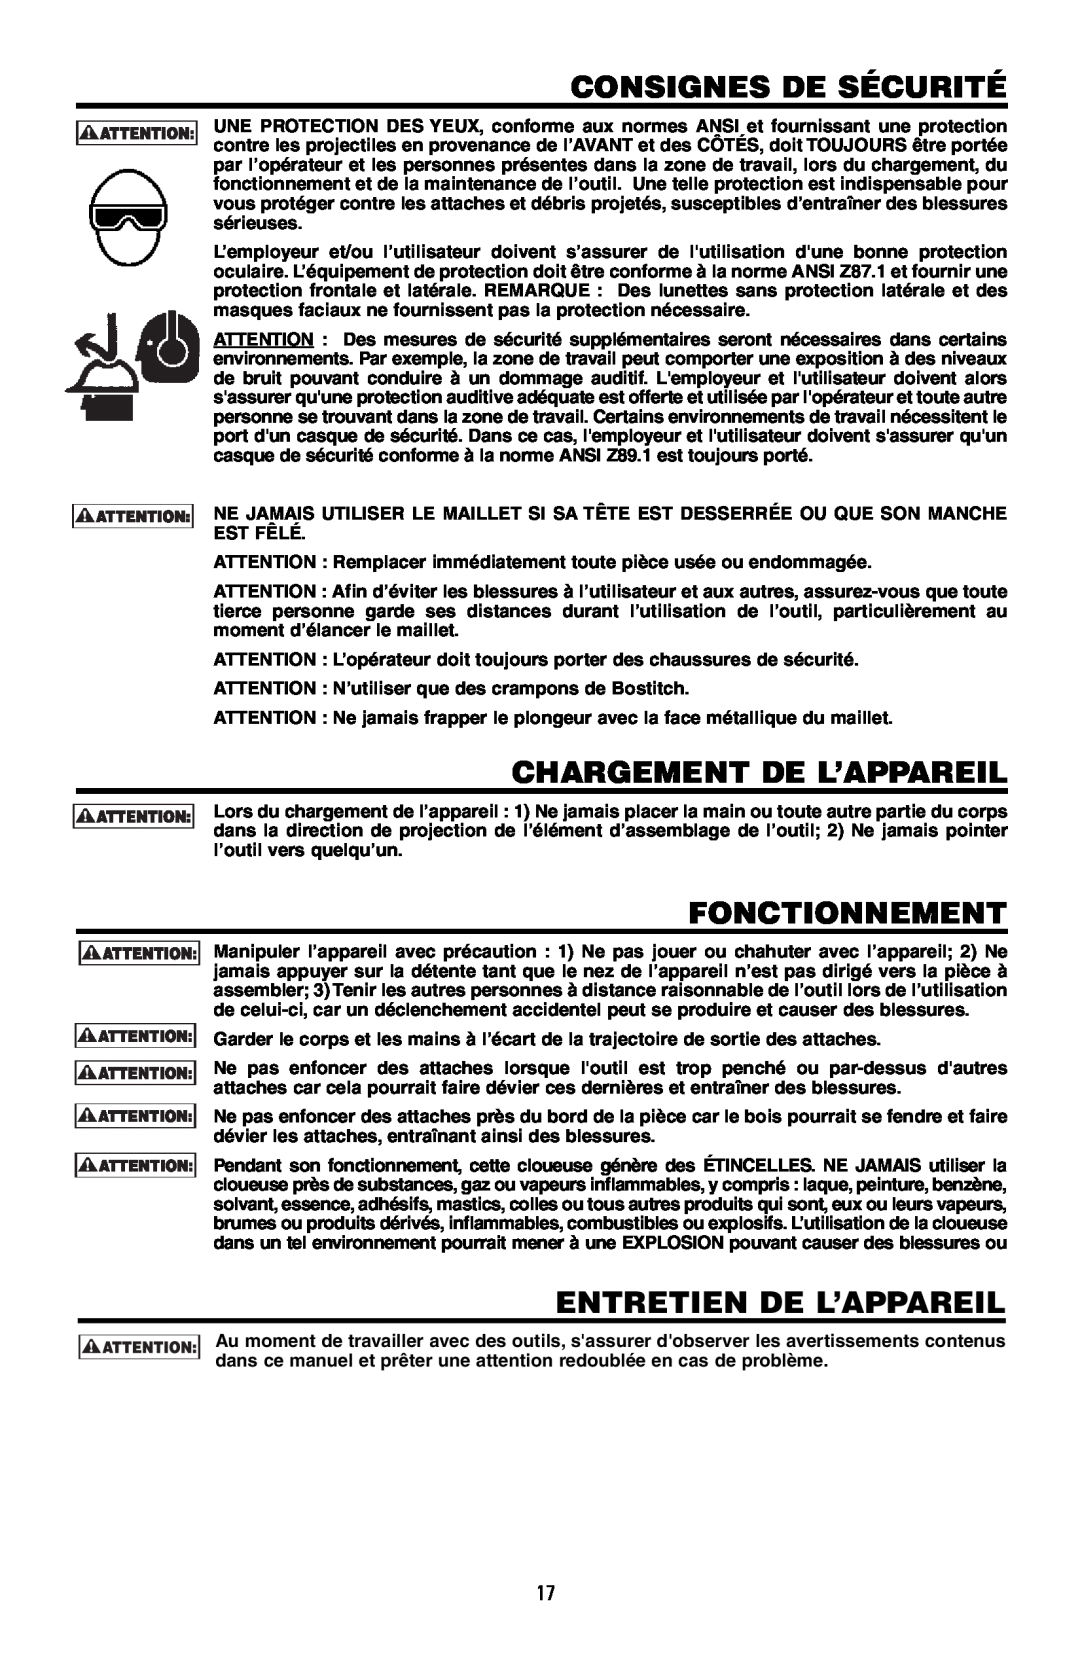 Bostitch 175616REVB, MFN-200 manual Consignes De Sécurité, Chargement De L’Appareil, Fonctionnement, Entretien De L’Appareil 